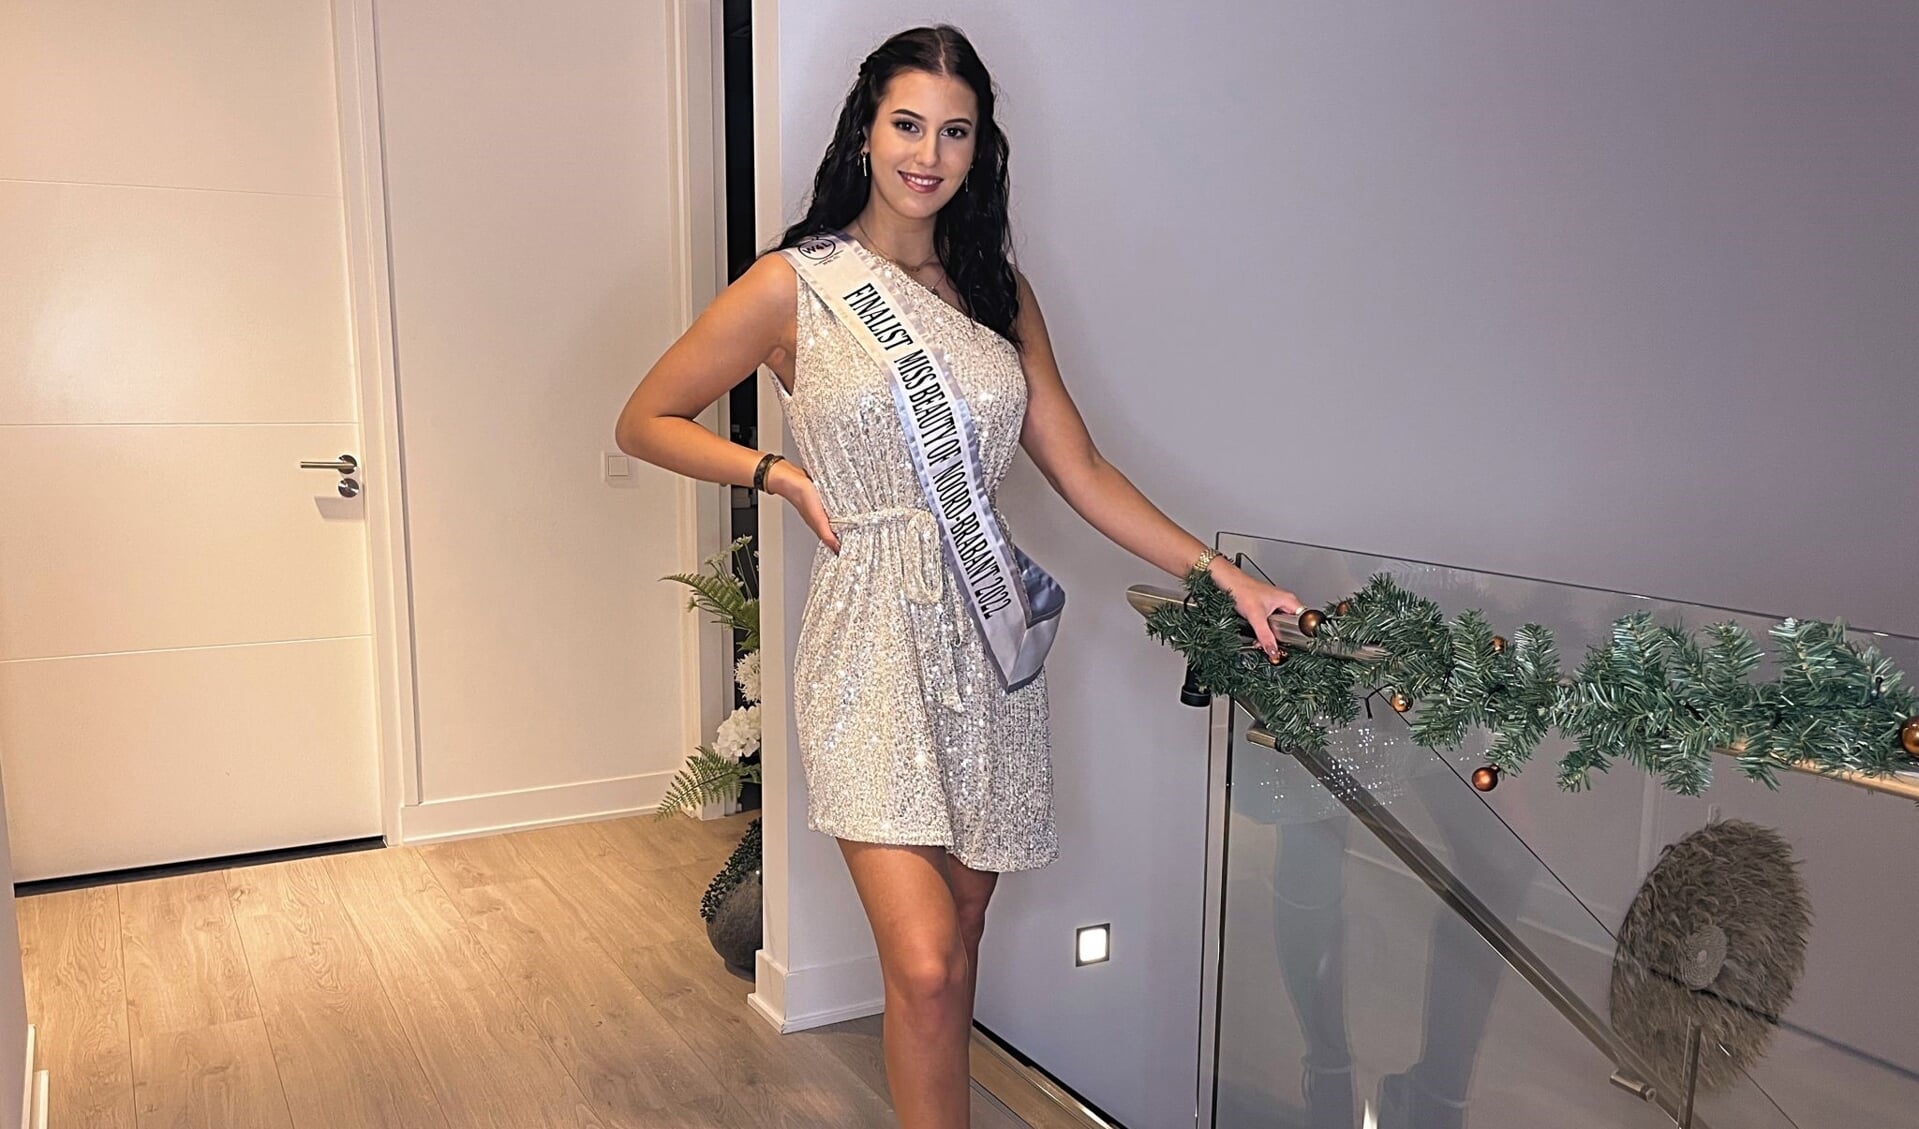 Lotte Berbers uit Boxmeer is finaliste bij de verkiezing van Miss Beauty of Noord-Brabant 2022.